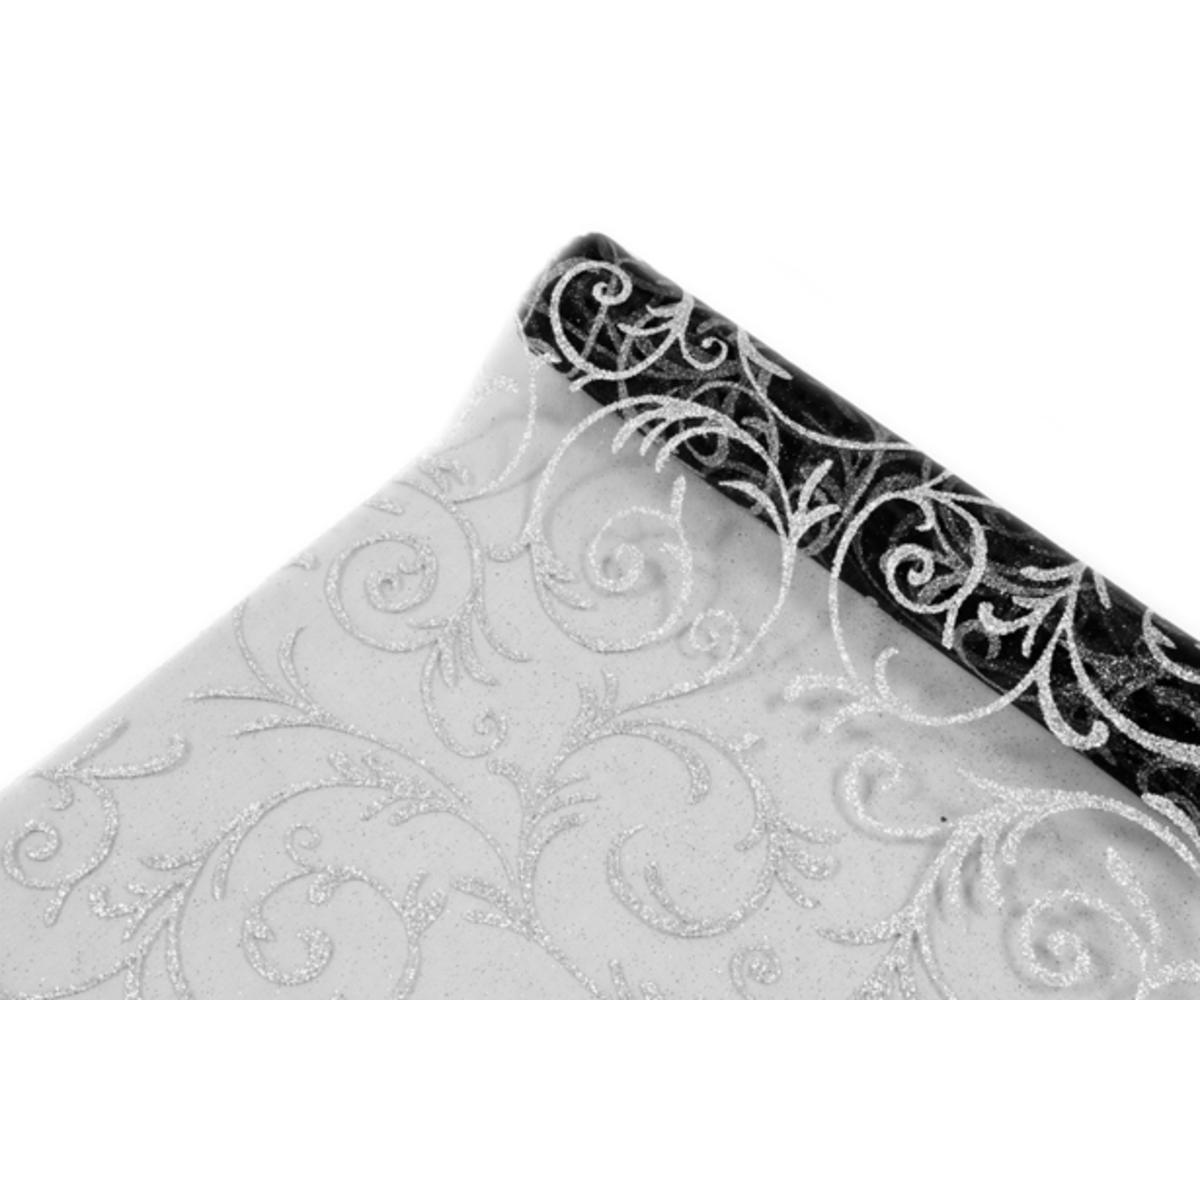 Rouleau pailleté motifs arabesques - Organza - 28 cm x 5 m - Blanc et argent